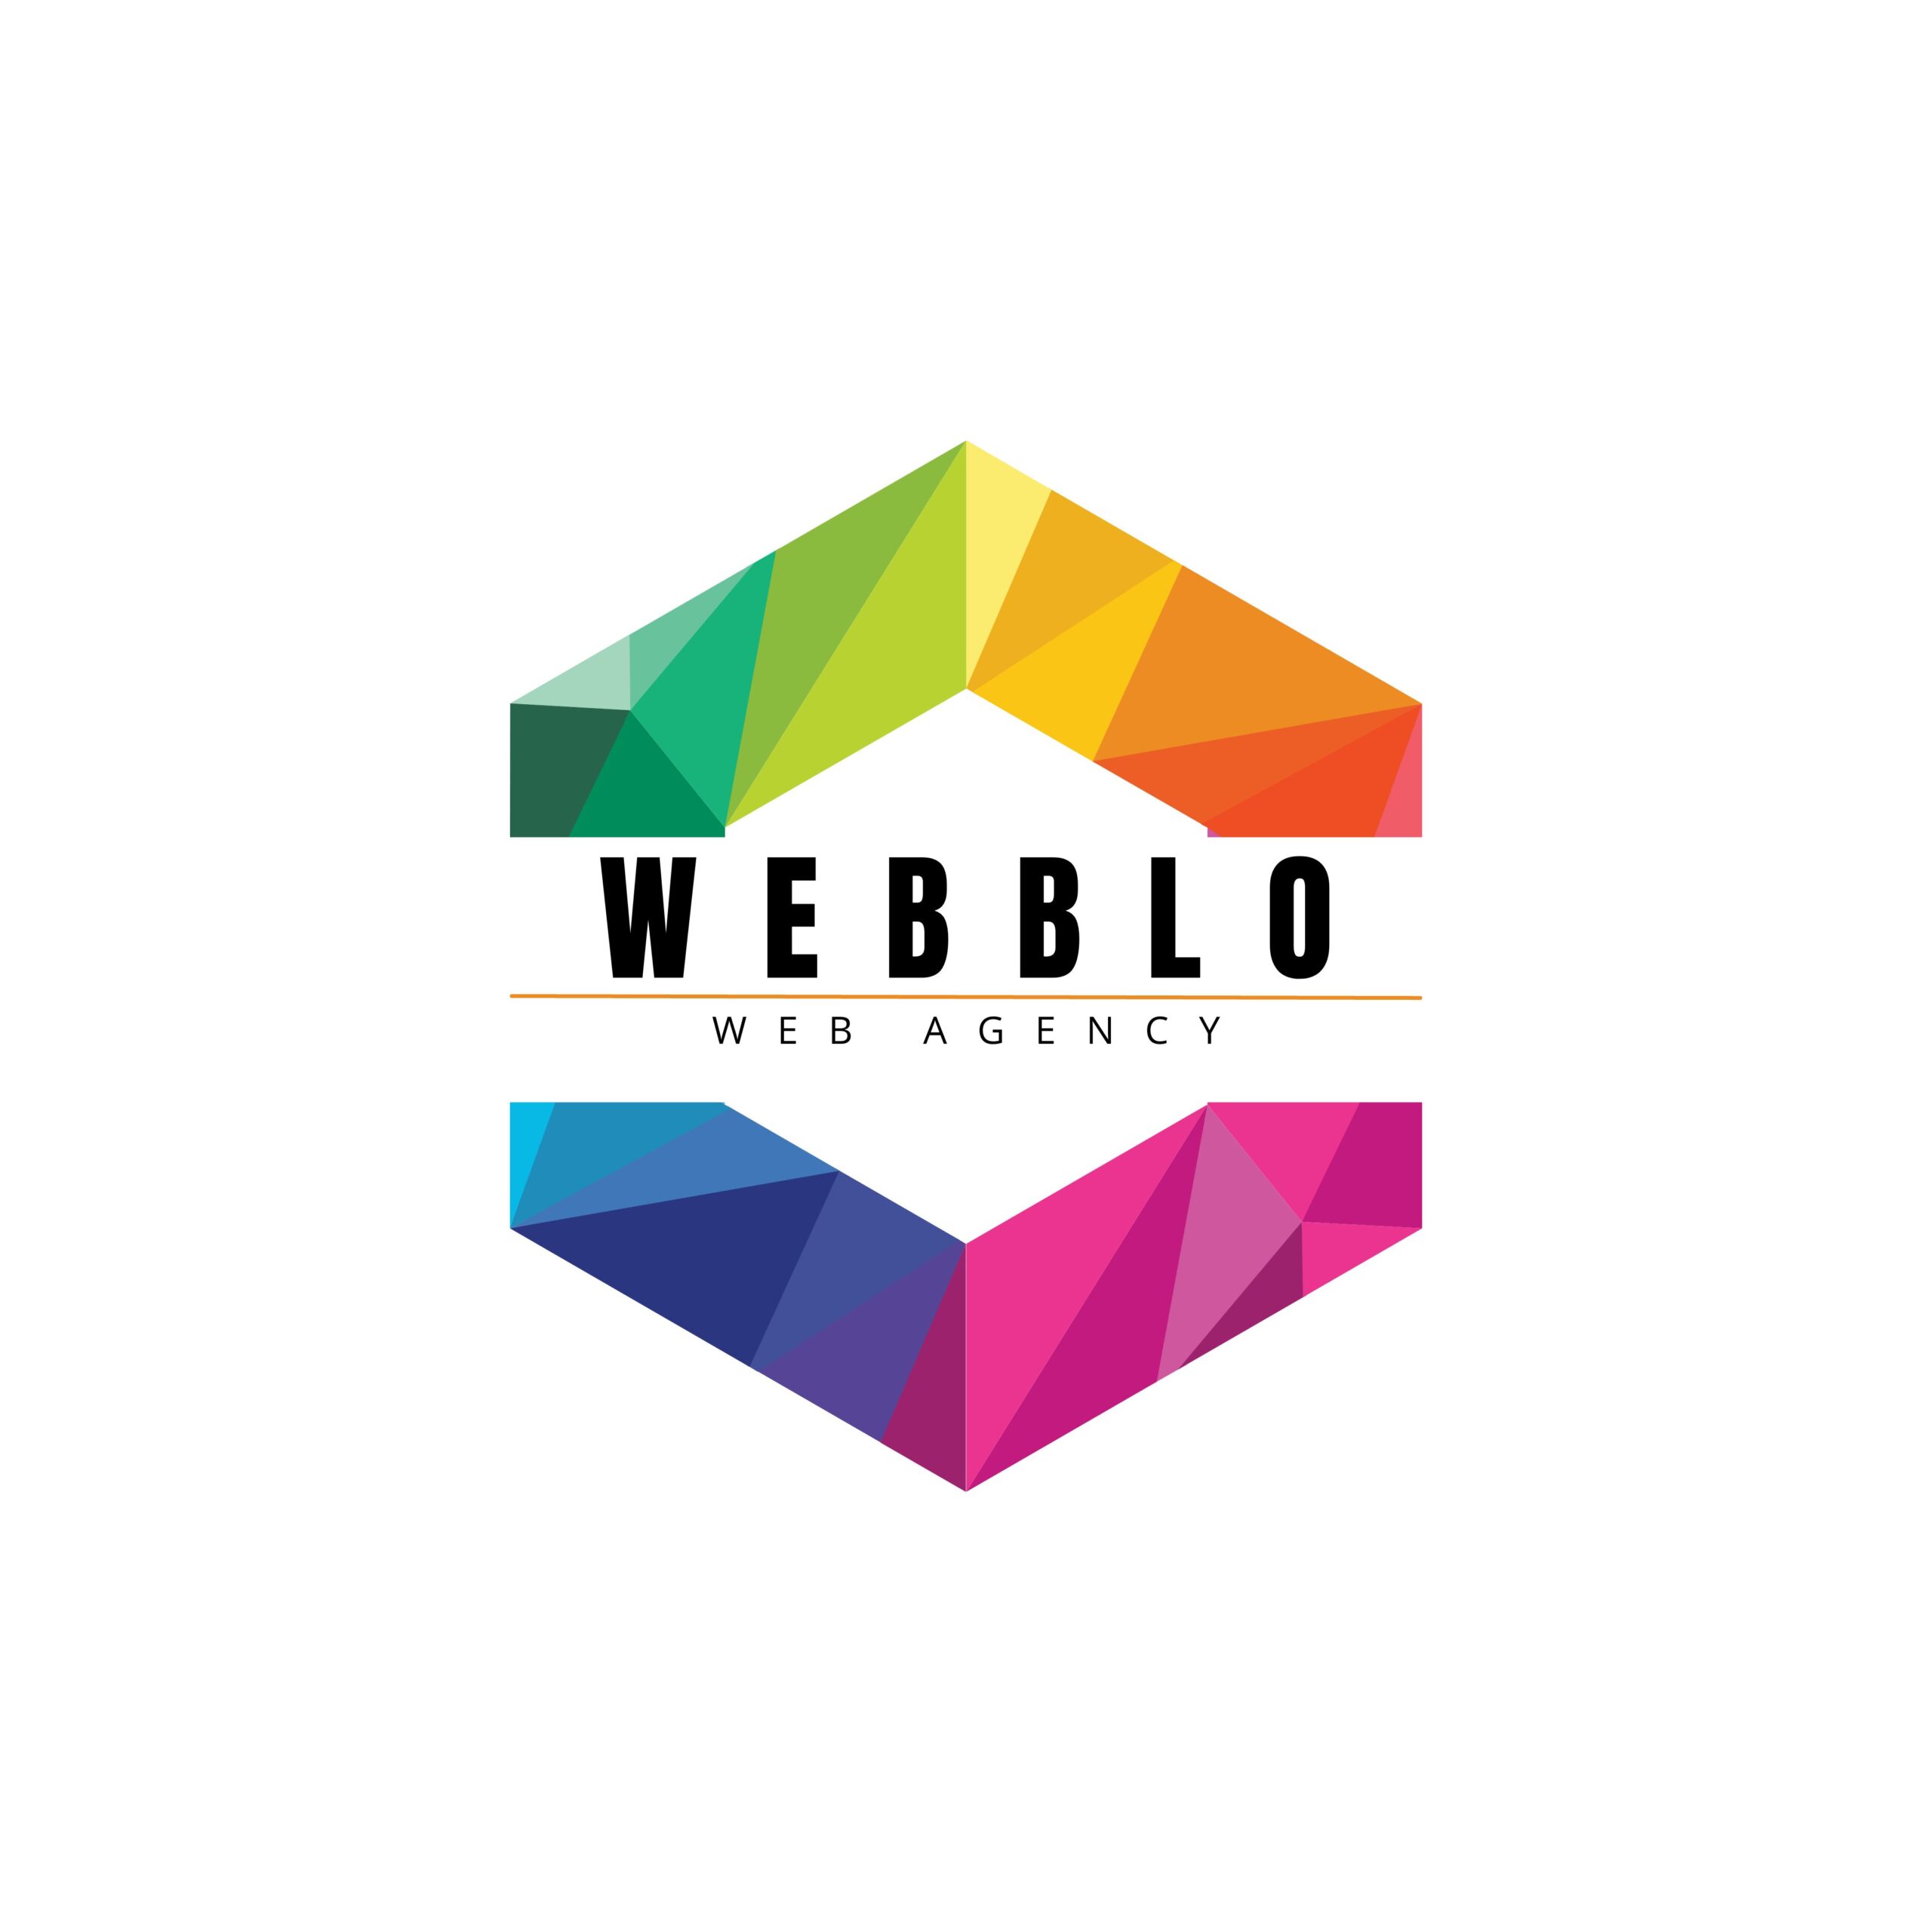 Webblo - Web Agency a Catania. La tua agenzia digitale di fiducia. Presenza online e strategia di marketing. Agenzia pubblicitaria a Catania.